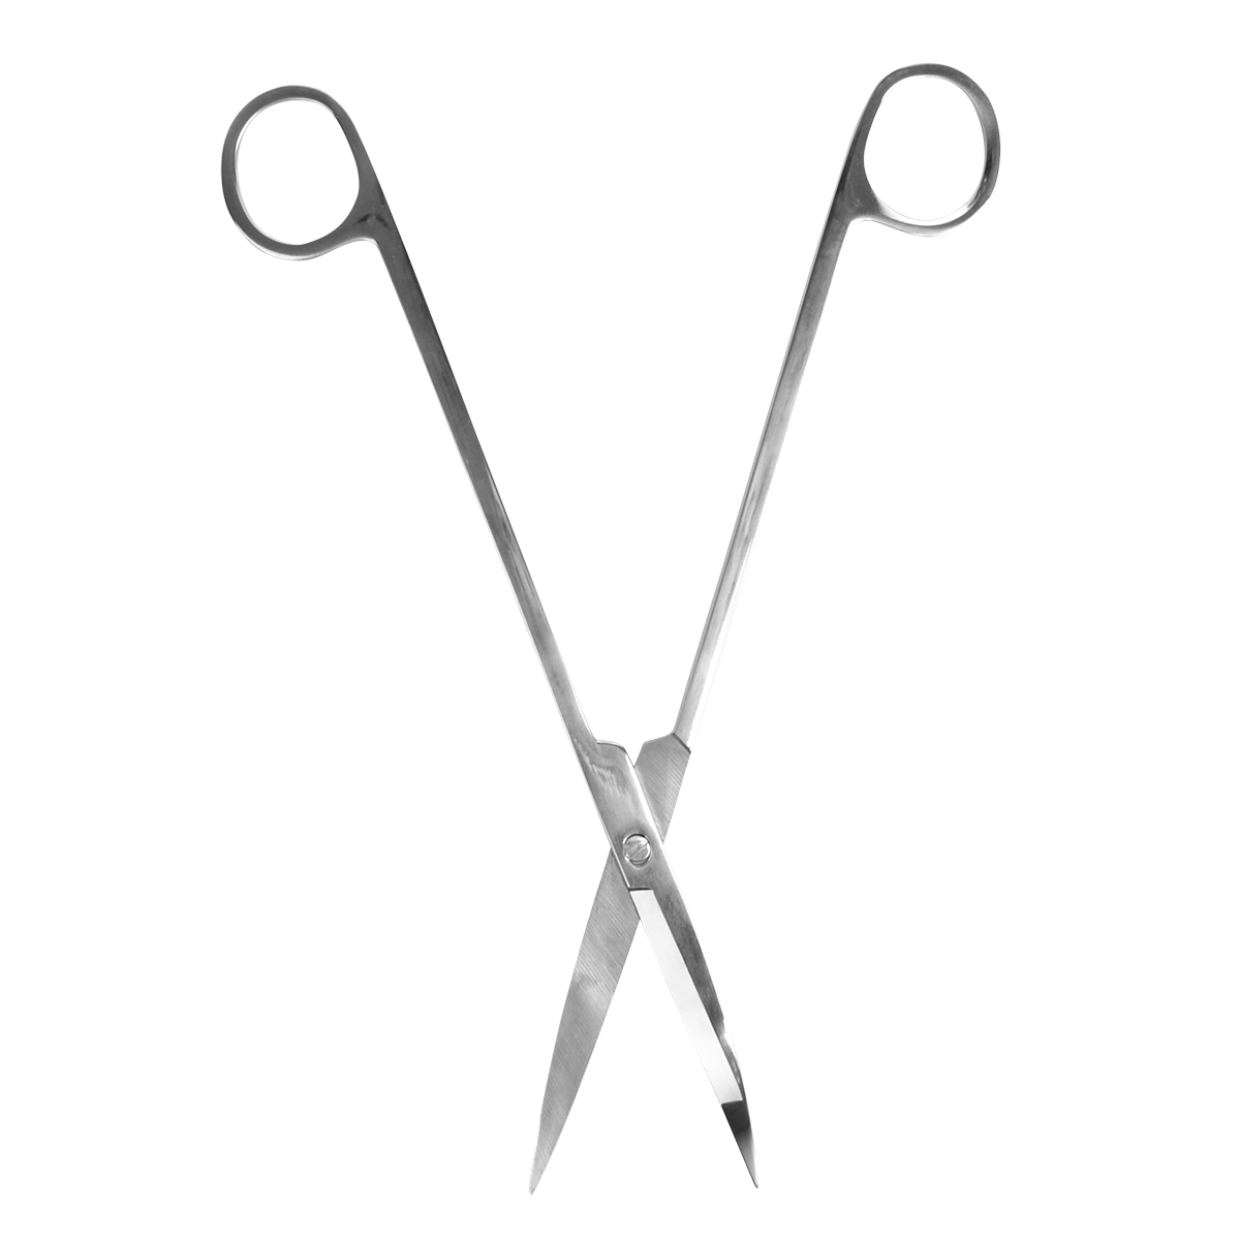 Terrarium scissors for plant care